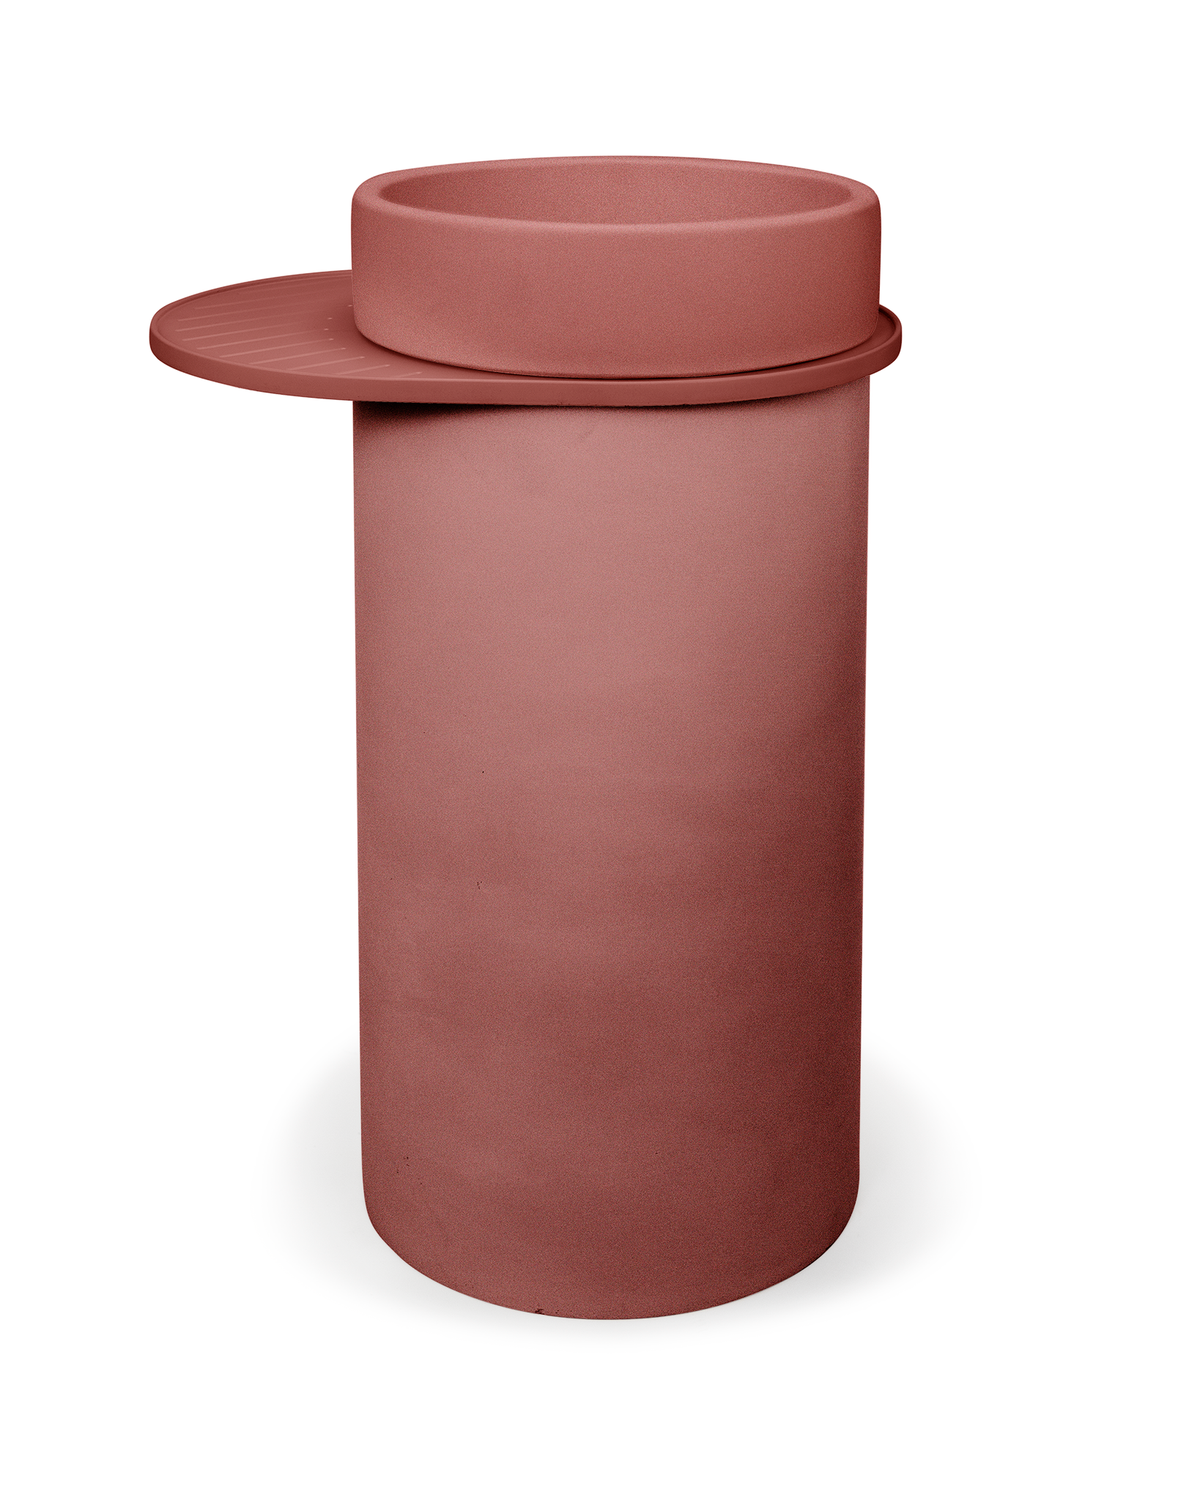 Cylinder - Bowl Basin (Musk)